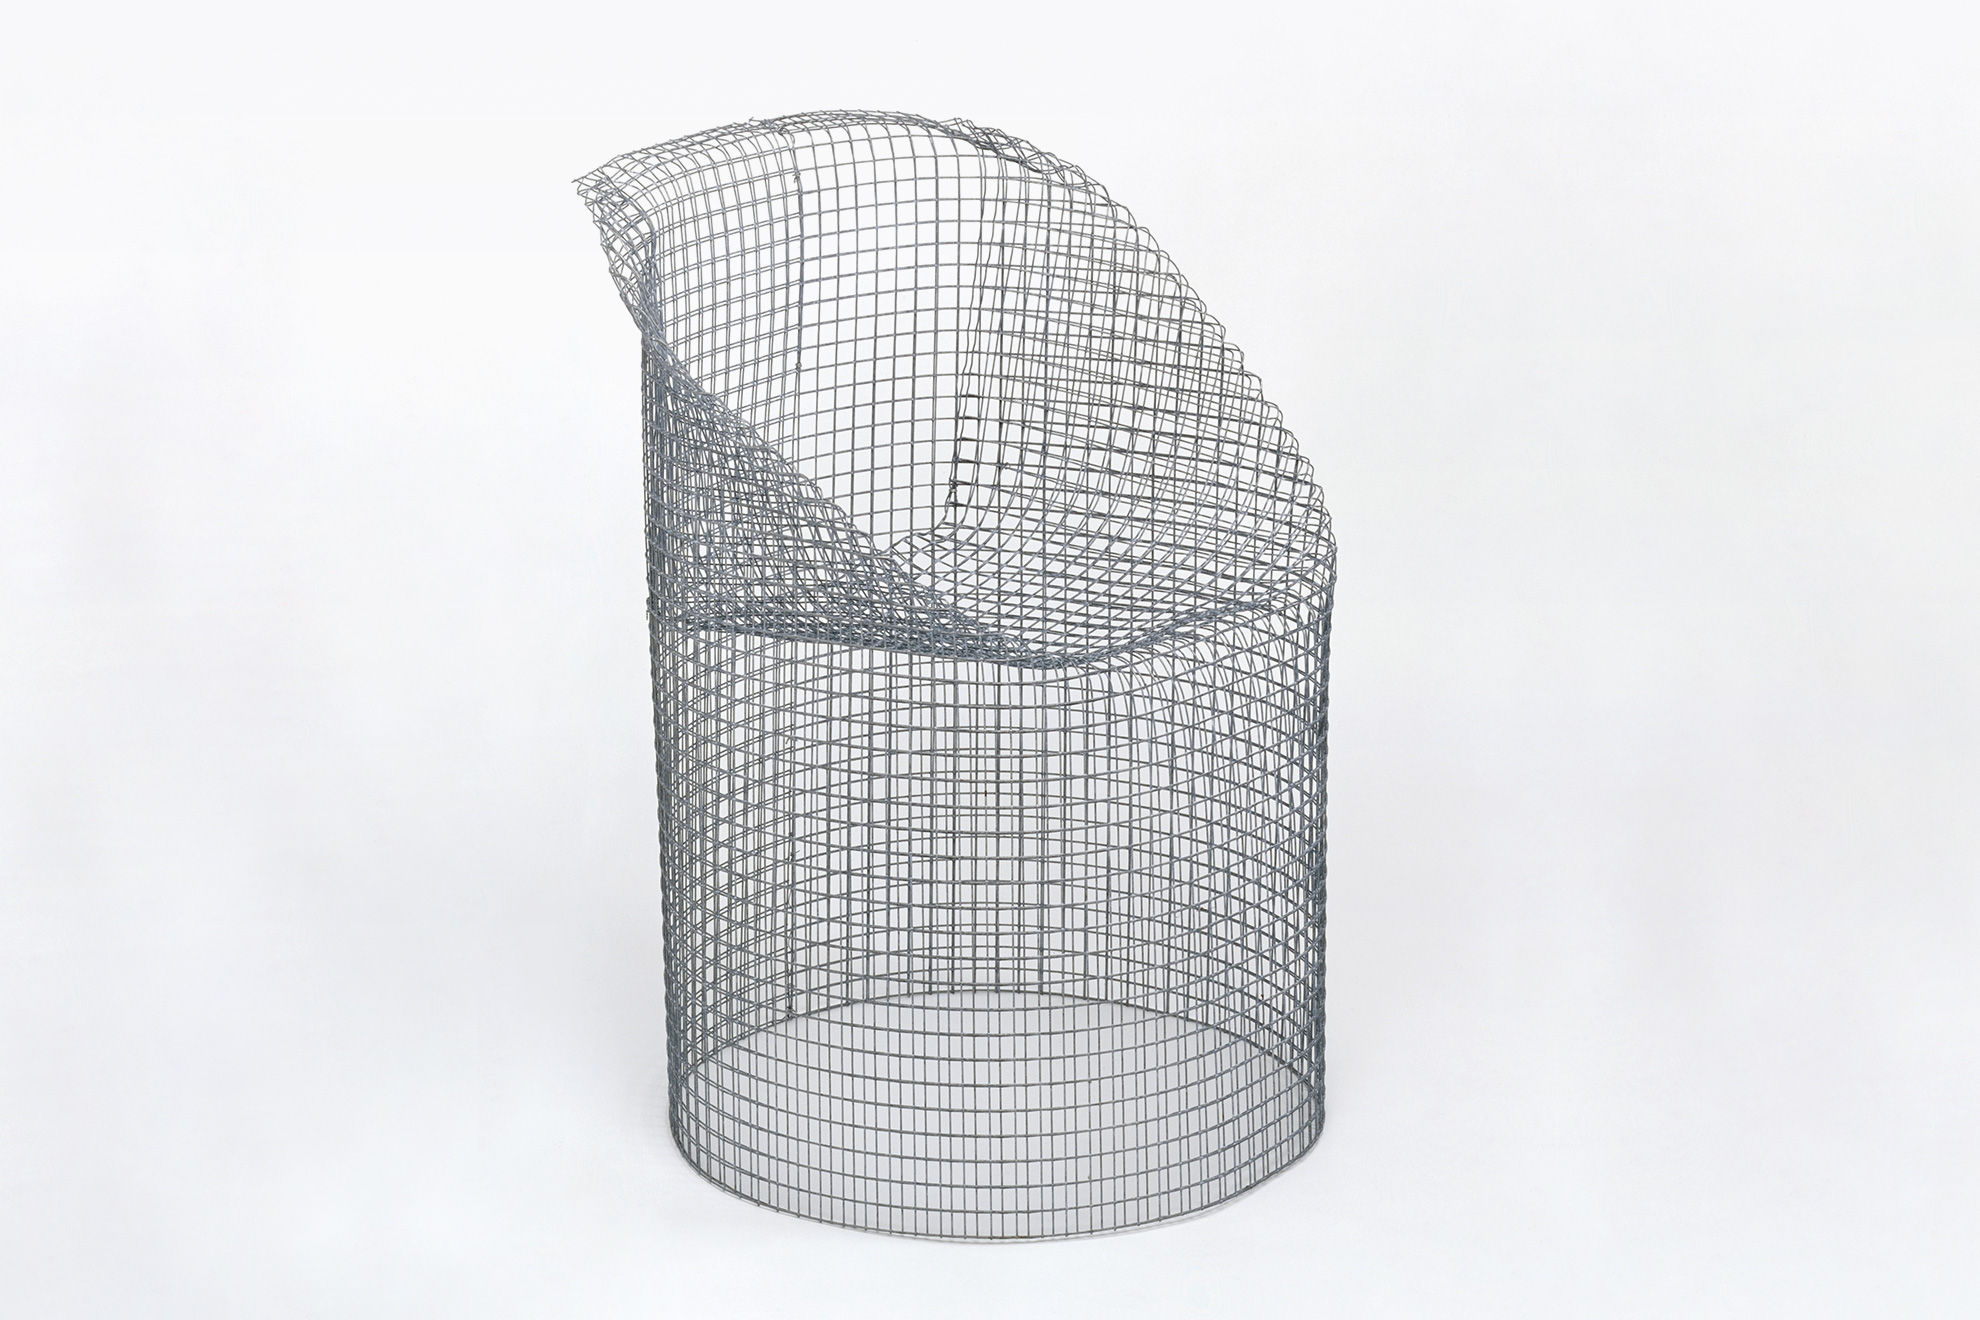 5-Minuten-Stuhl, 1970, Museum für Gestaltung Zürich, Designsammlung, ZHdK – Fotografie: Museum für Gestaltung Zürich, Designsammlung, ZHdK